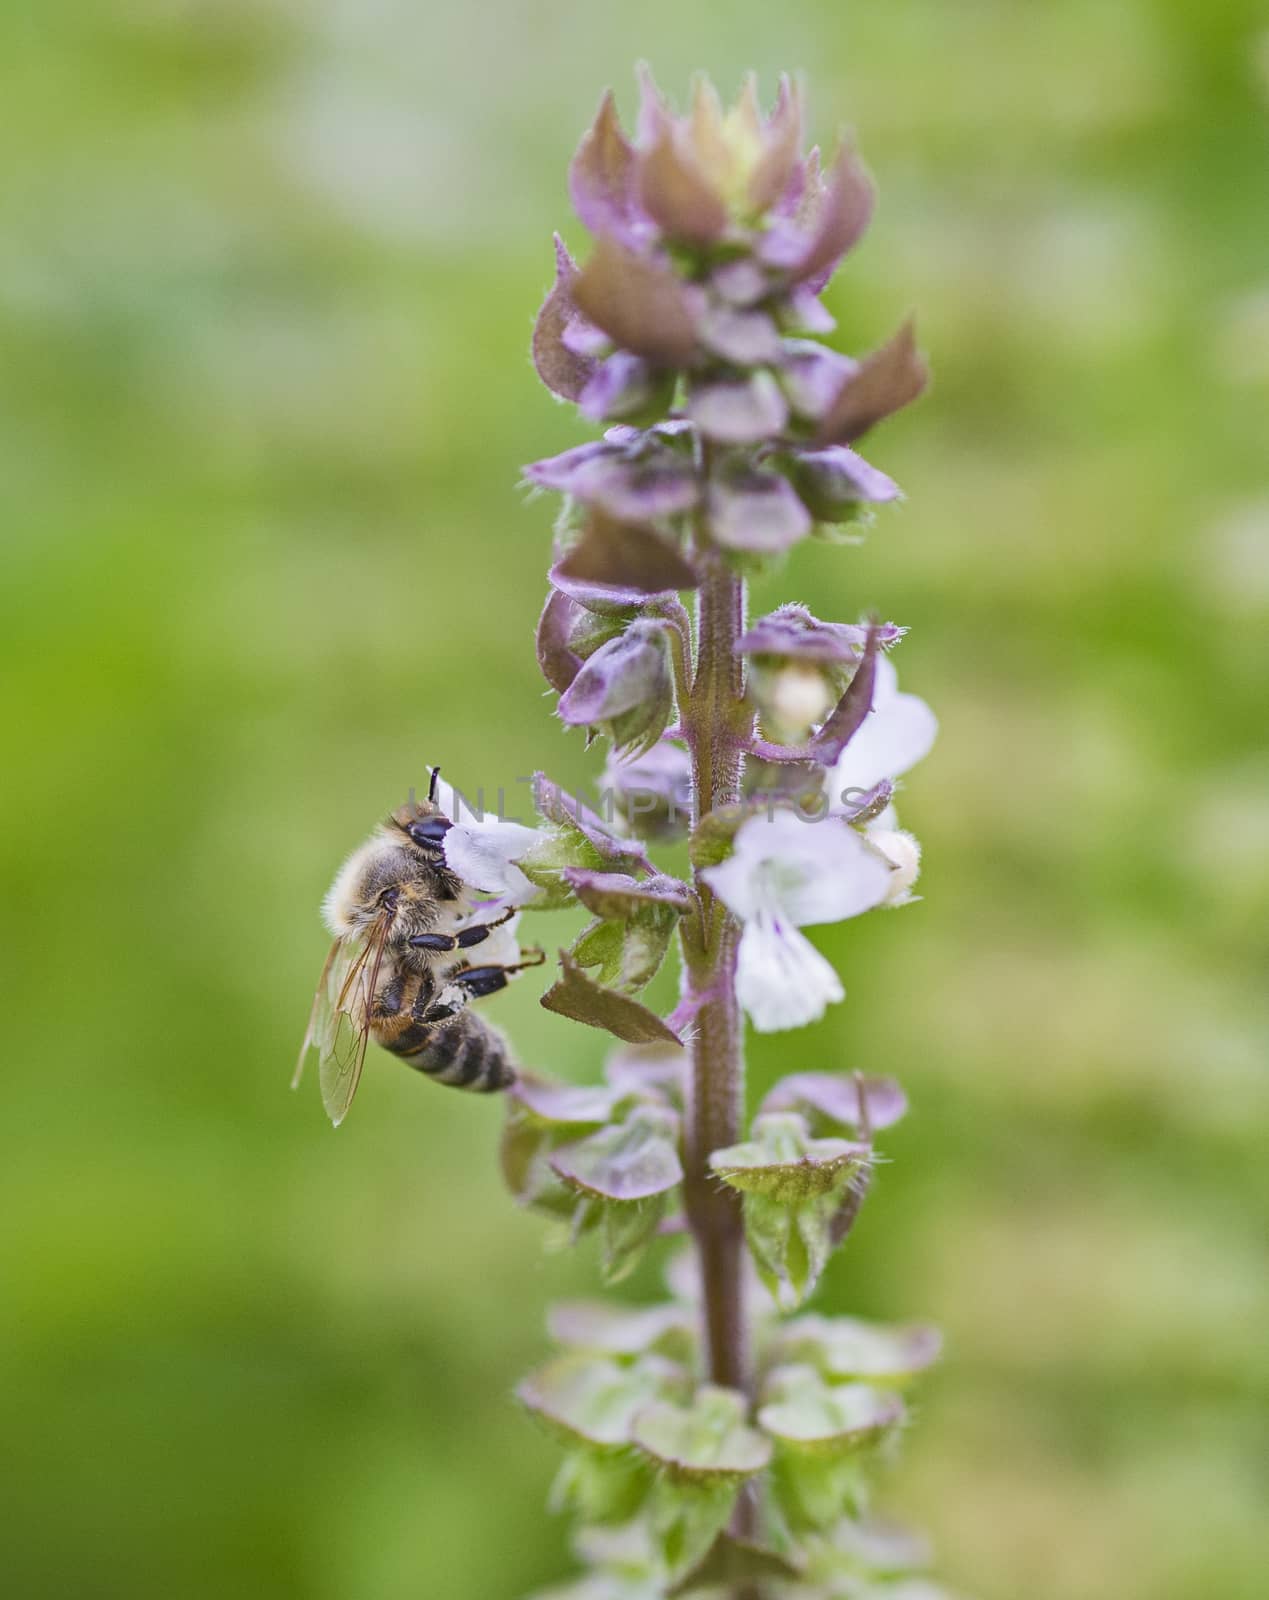 Honey bee on flower bud in garden by paulvinten